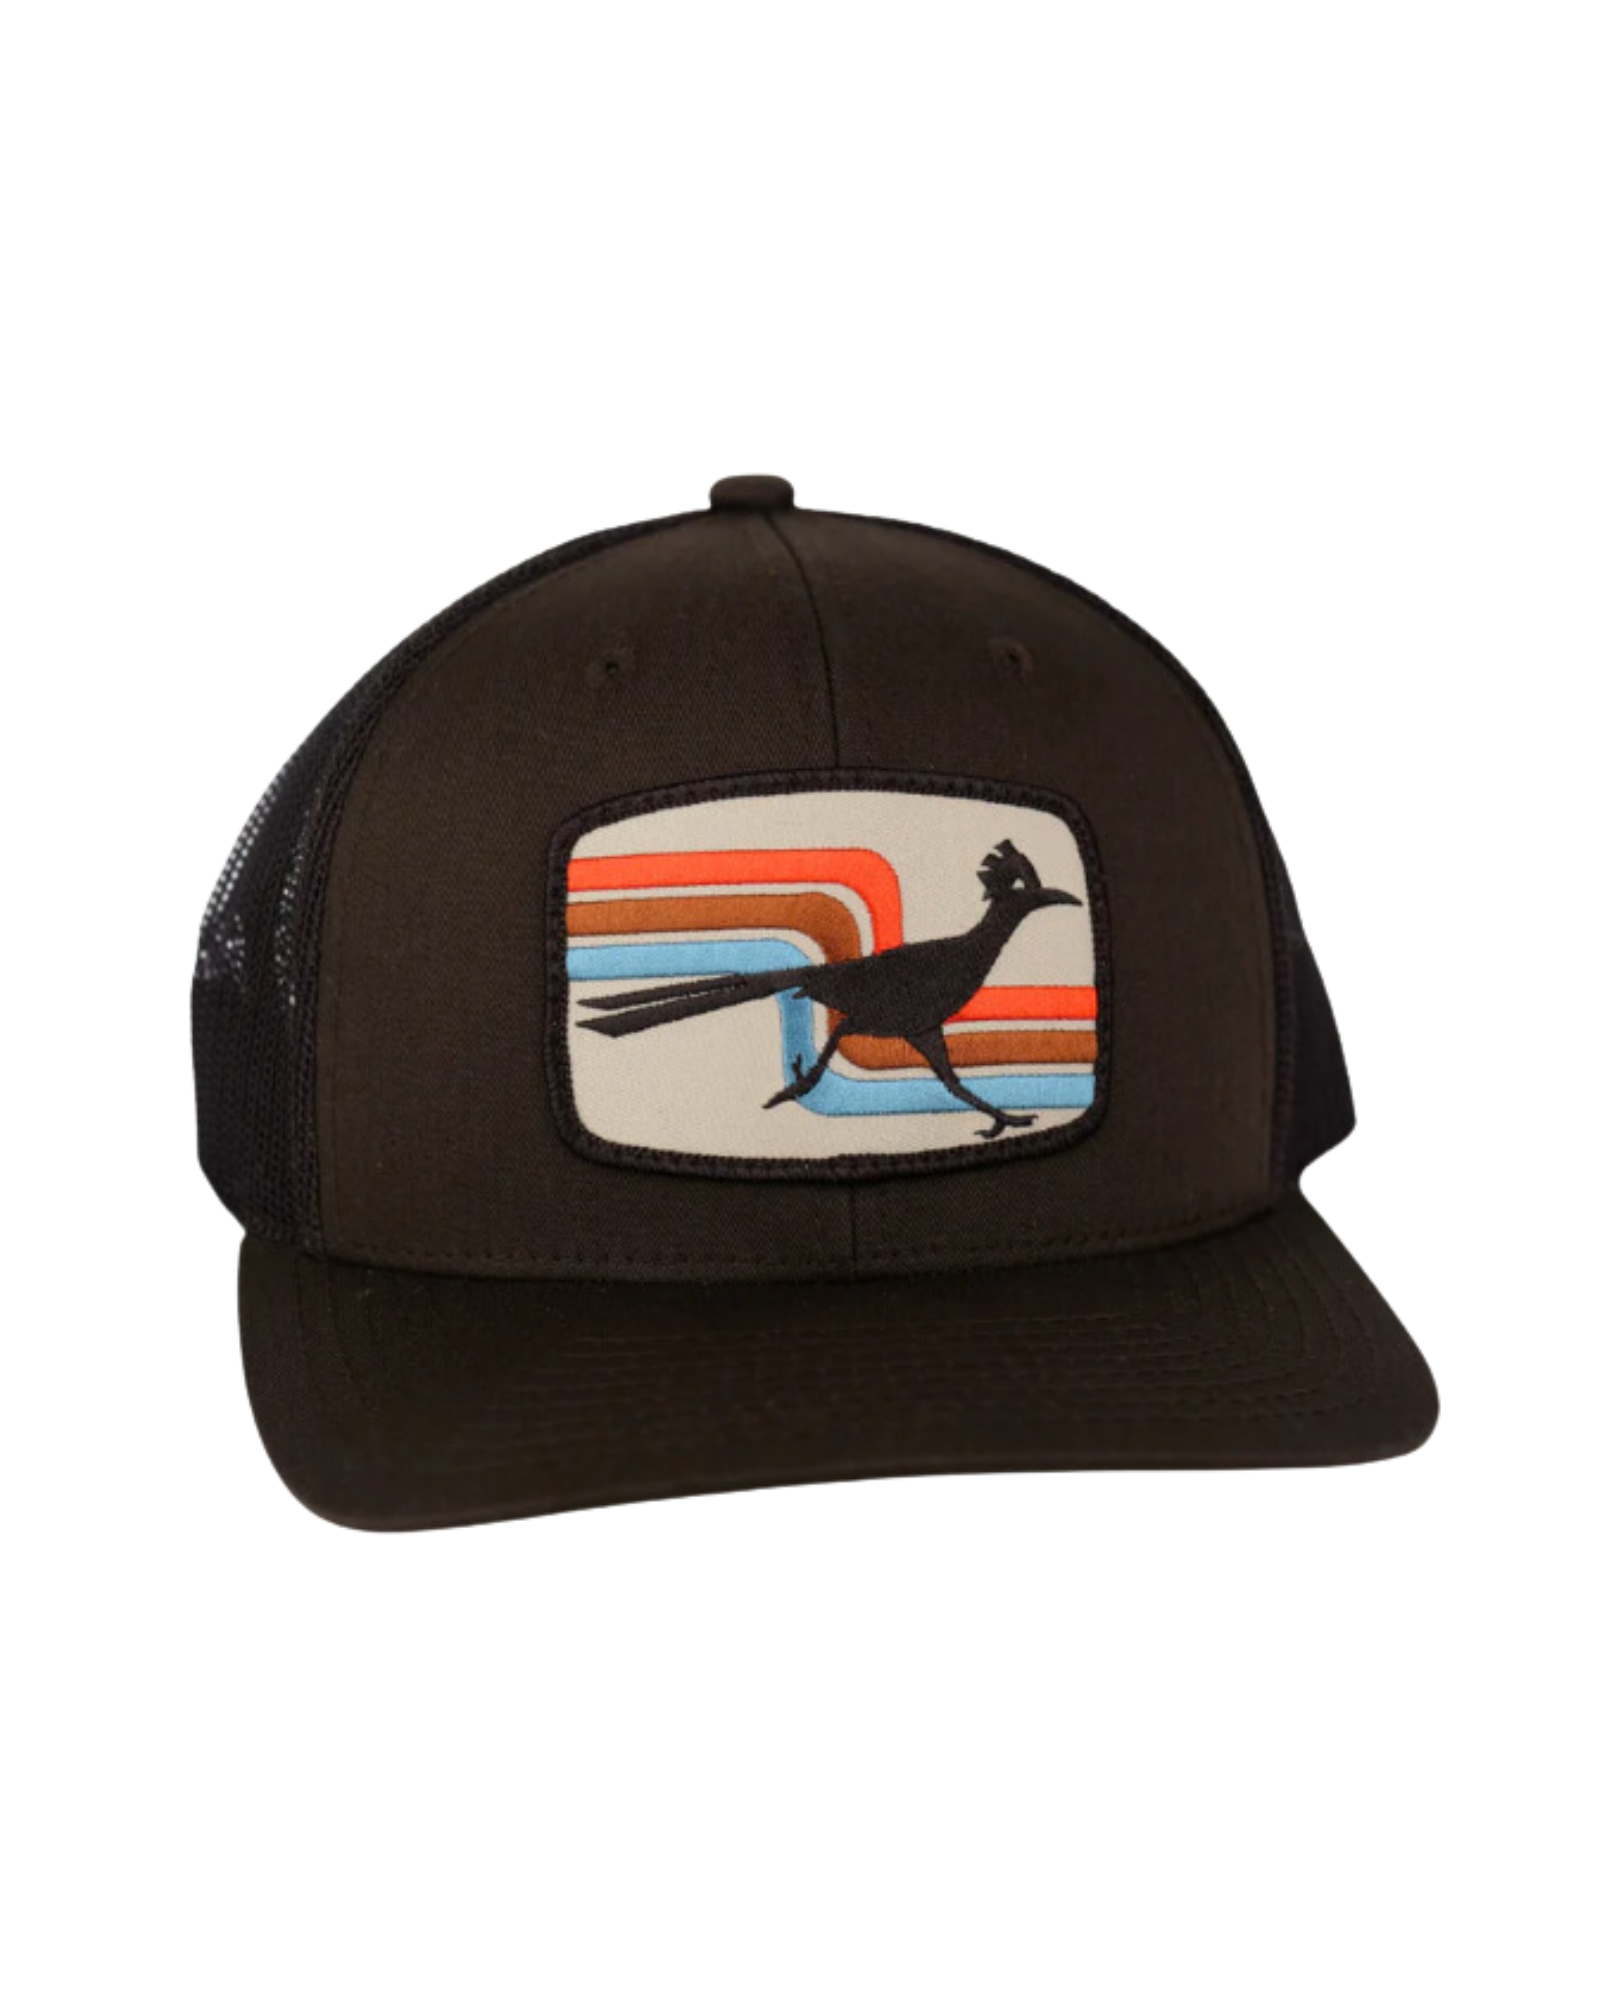 70s Roadrunner Curved Trucker Hat